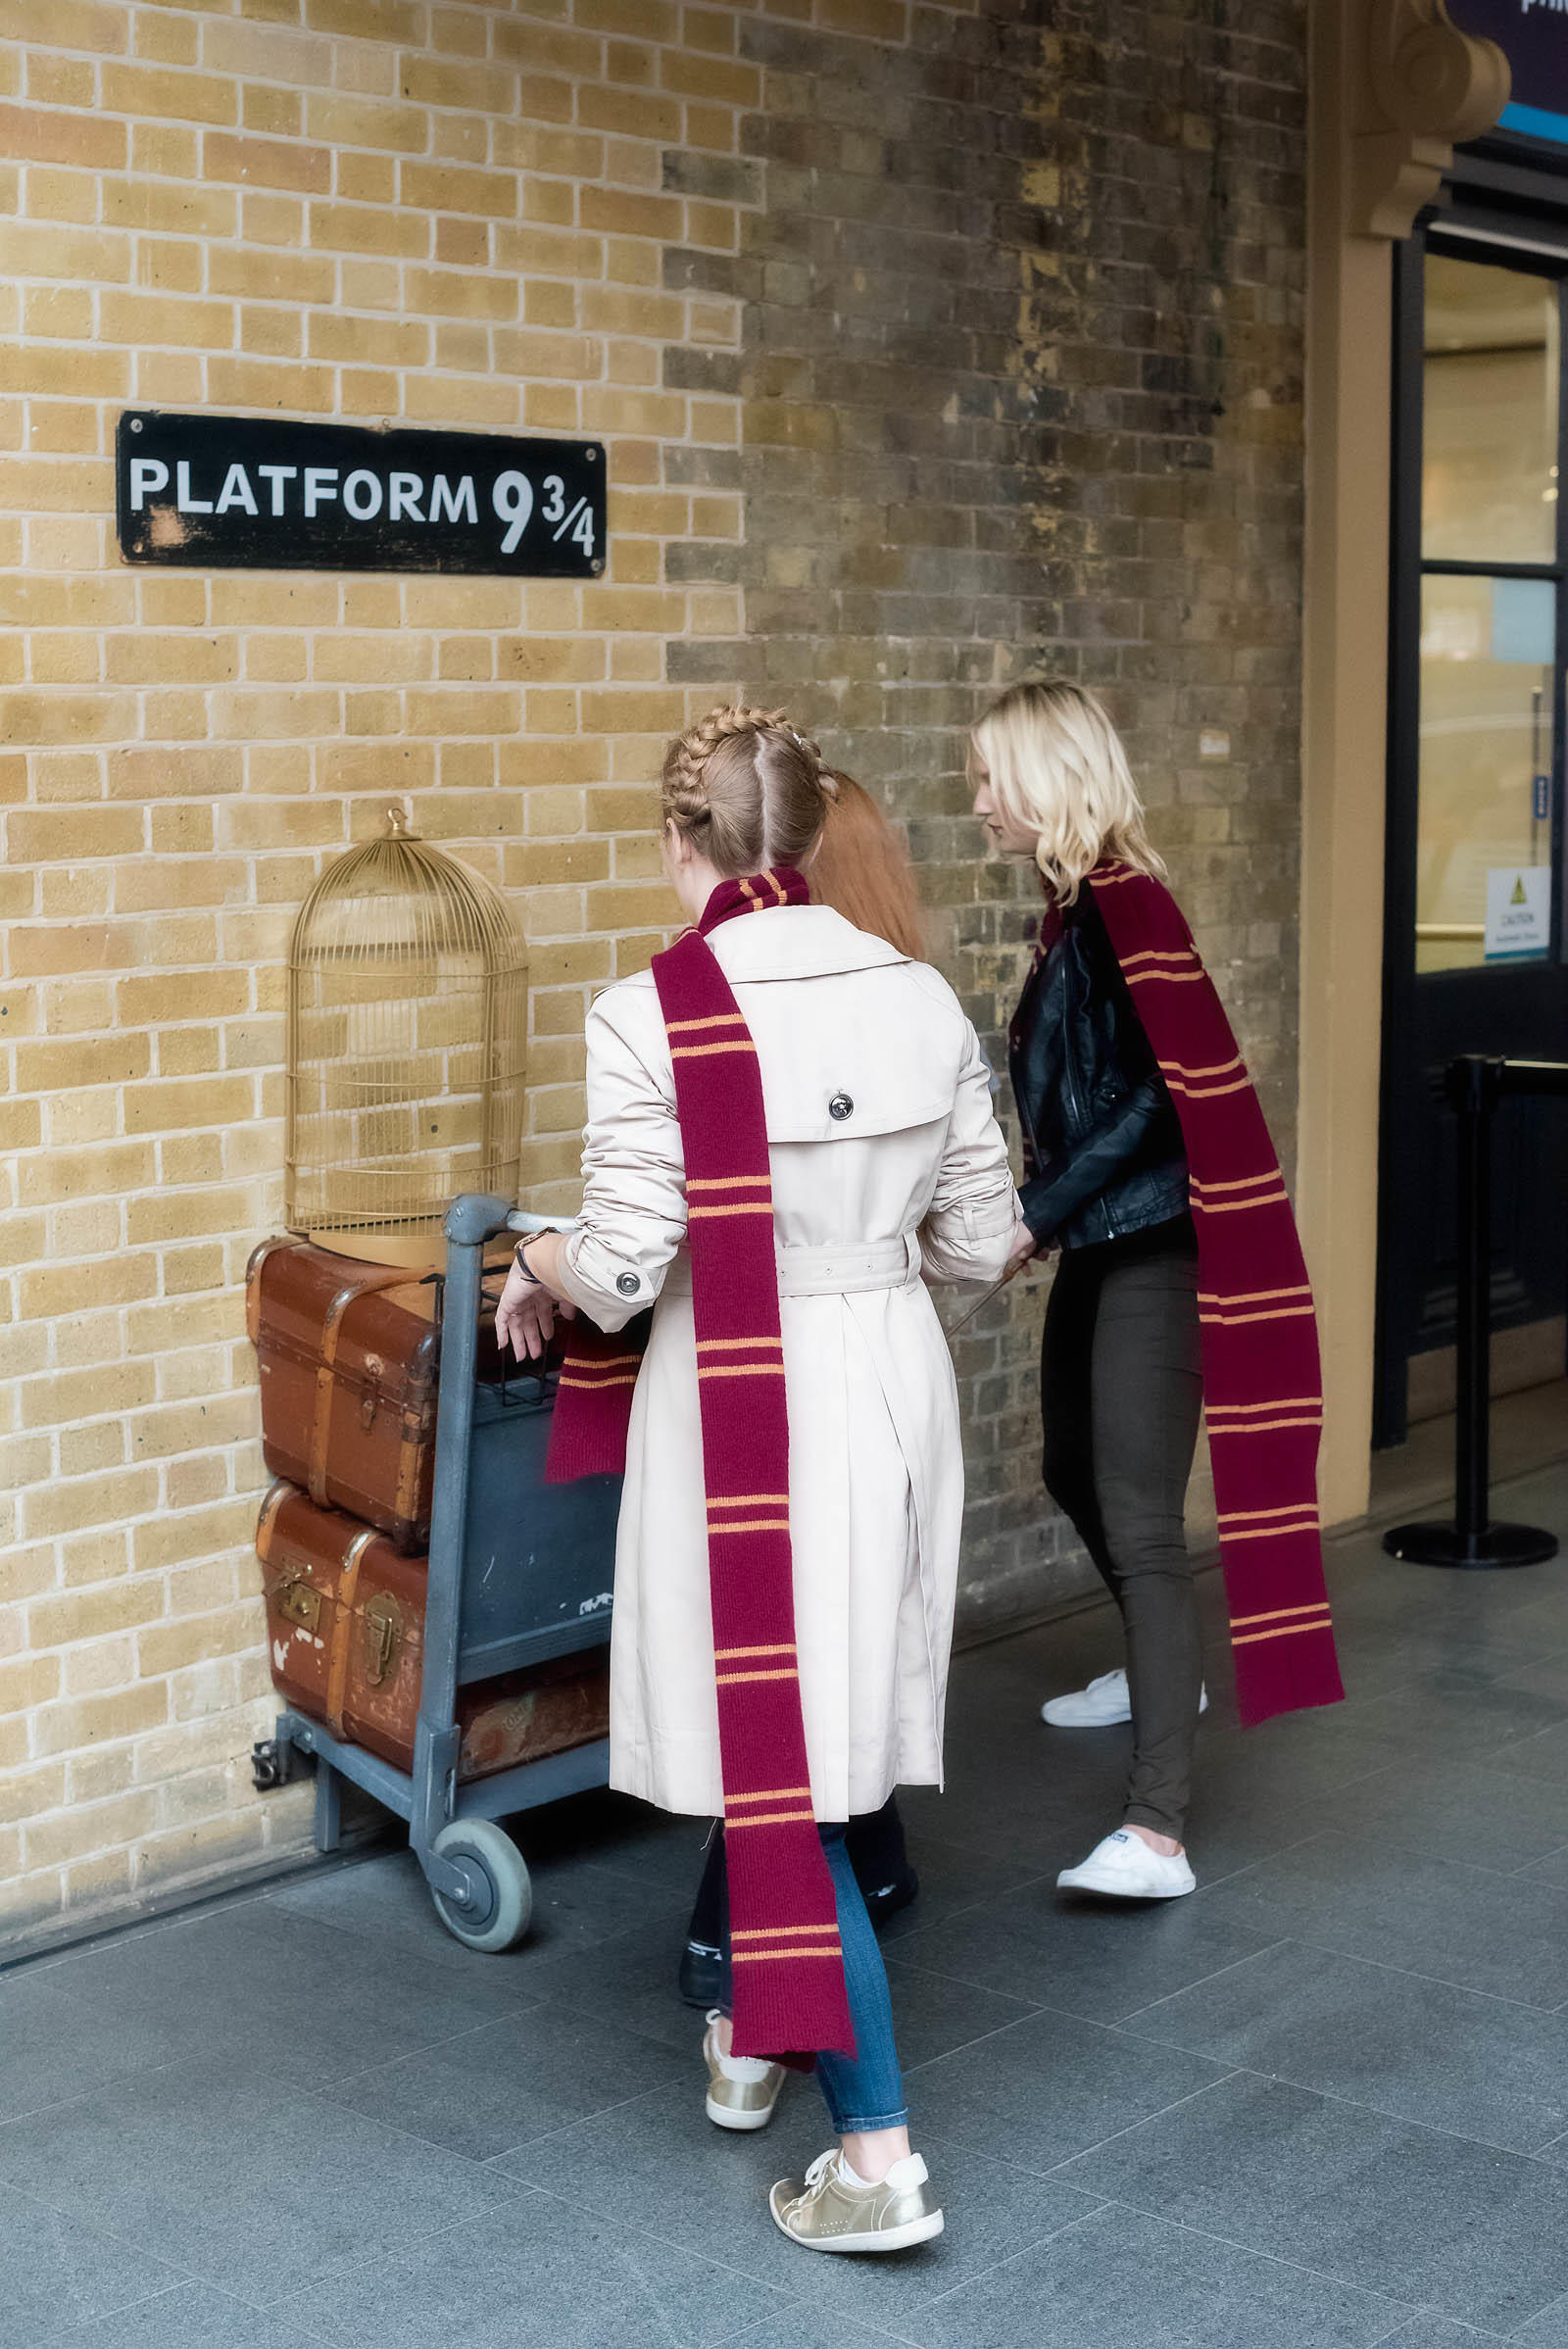 Platform 9 3/4 London King's Cross Station Harry Potter London